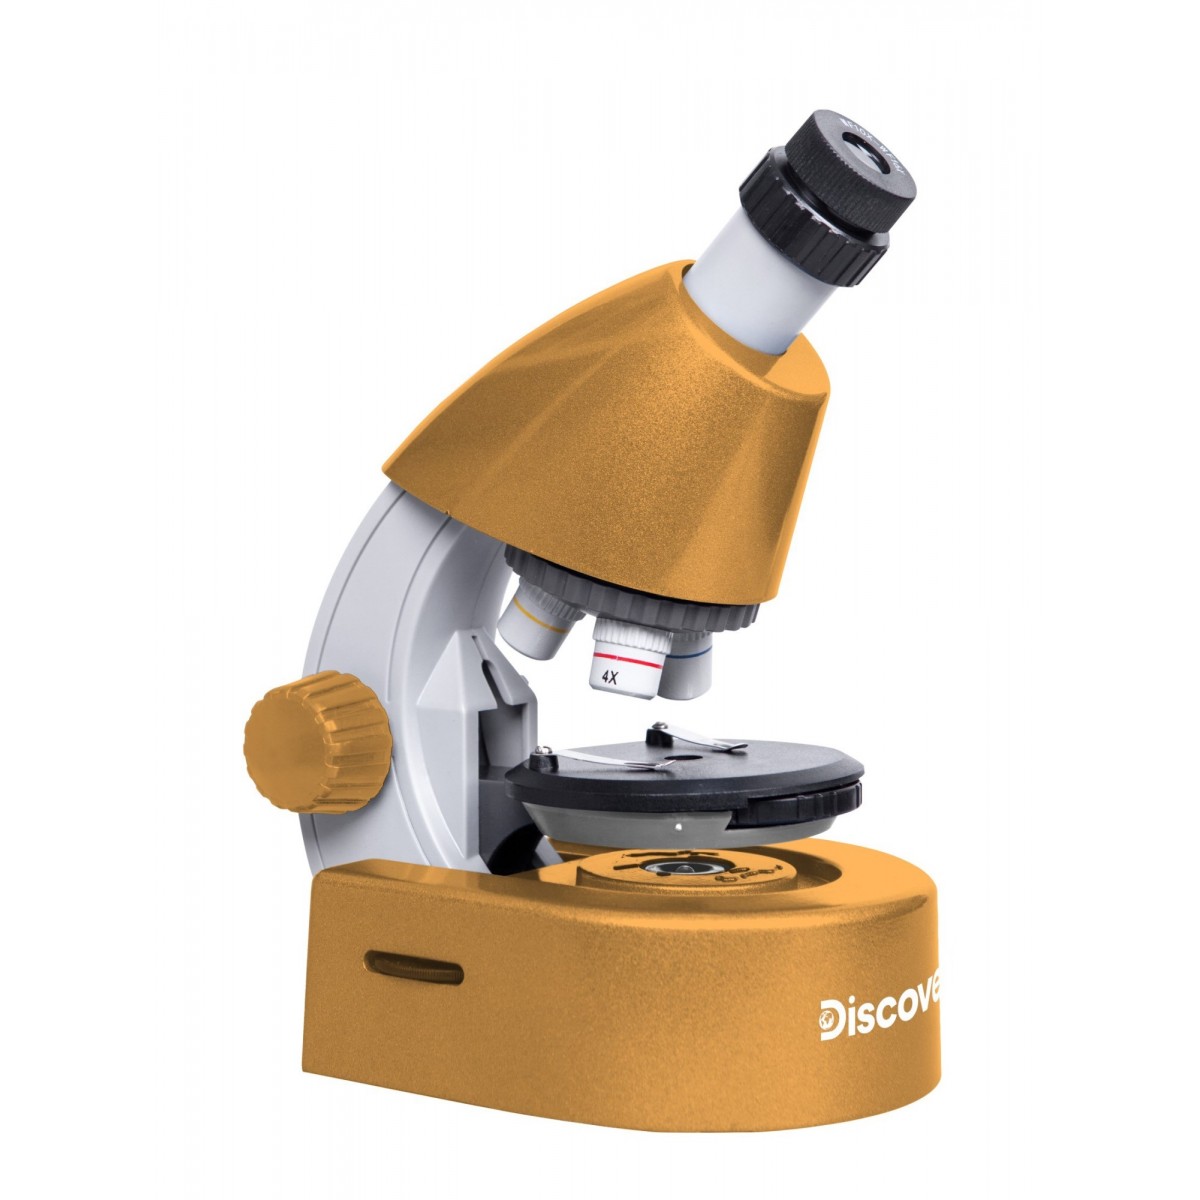 til stede følsomhed Alvorlig Køb Discovery Micro Solar Microscope With Book - Mikroskop (4620137480535)